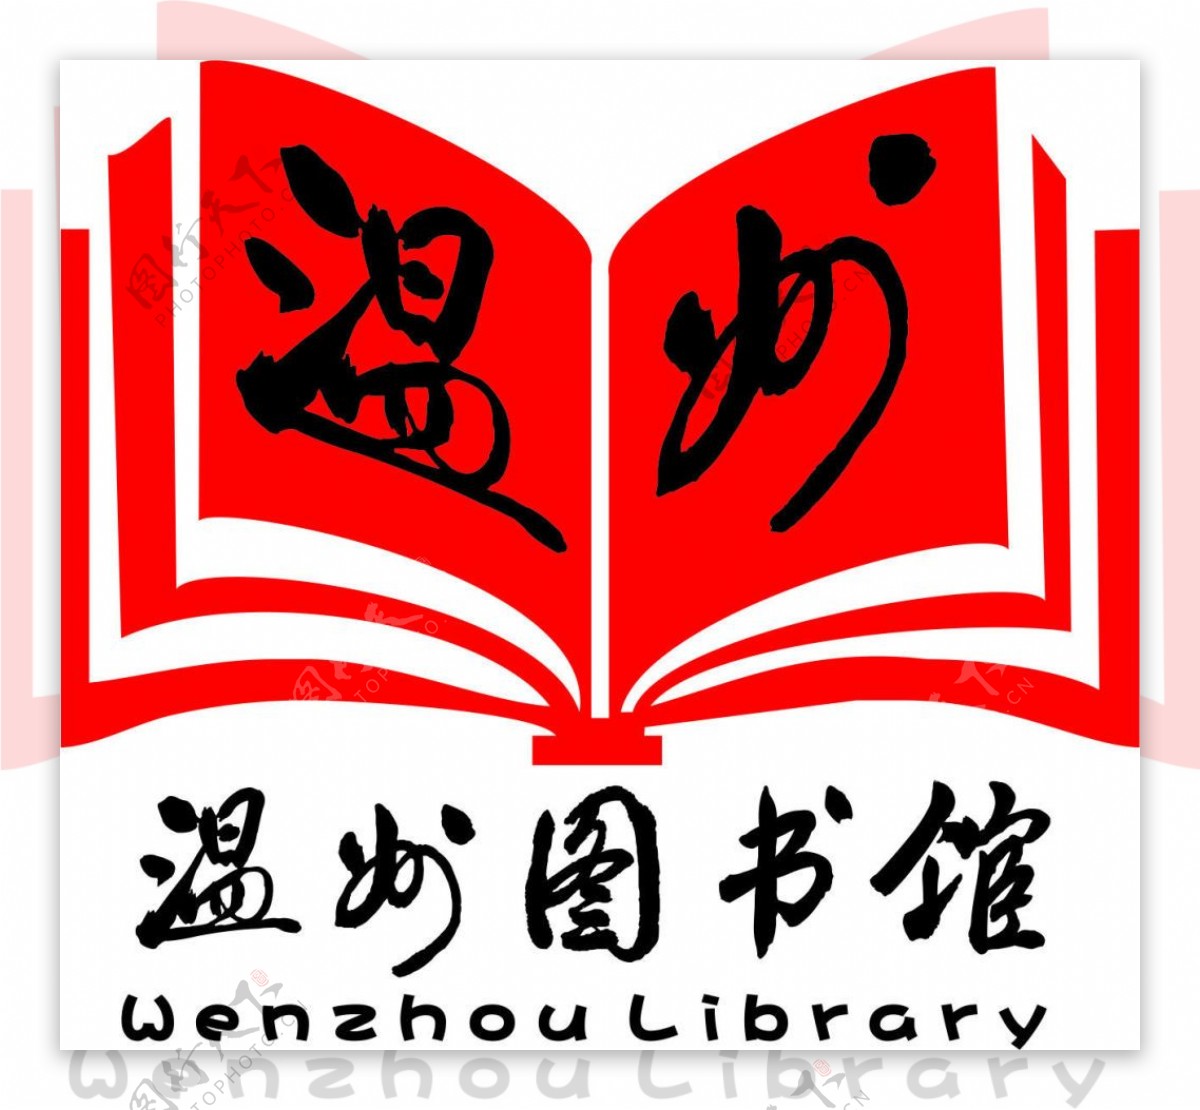 温州图书馆logologo